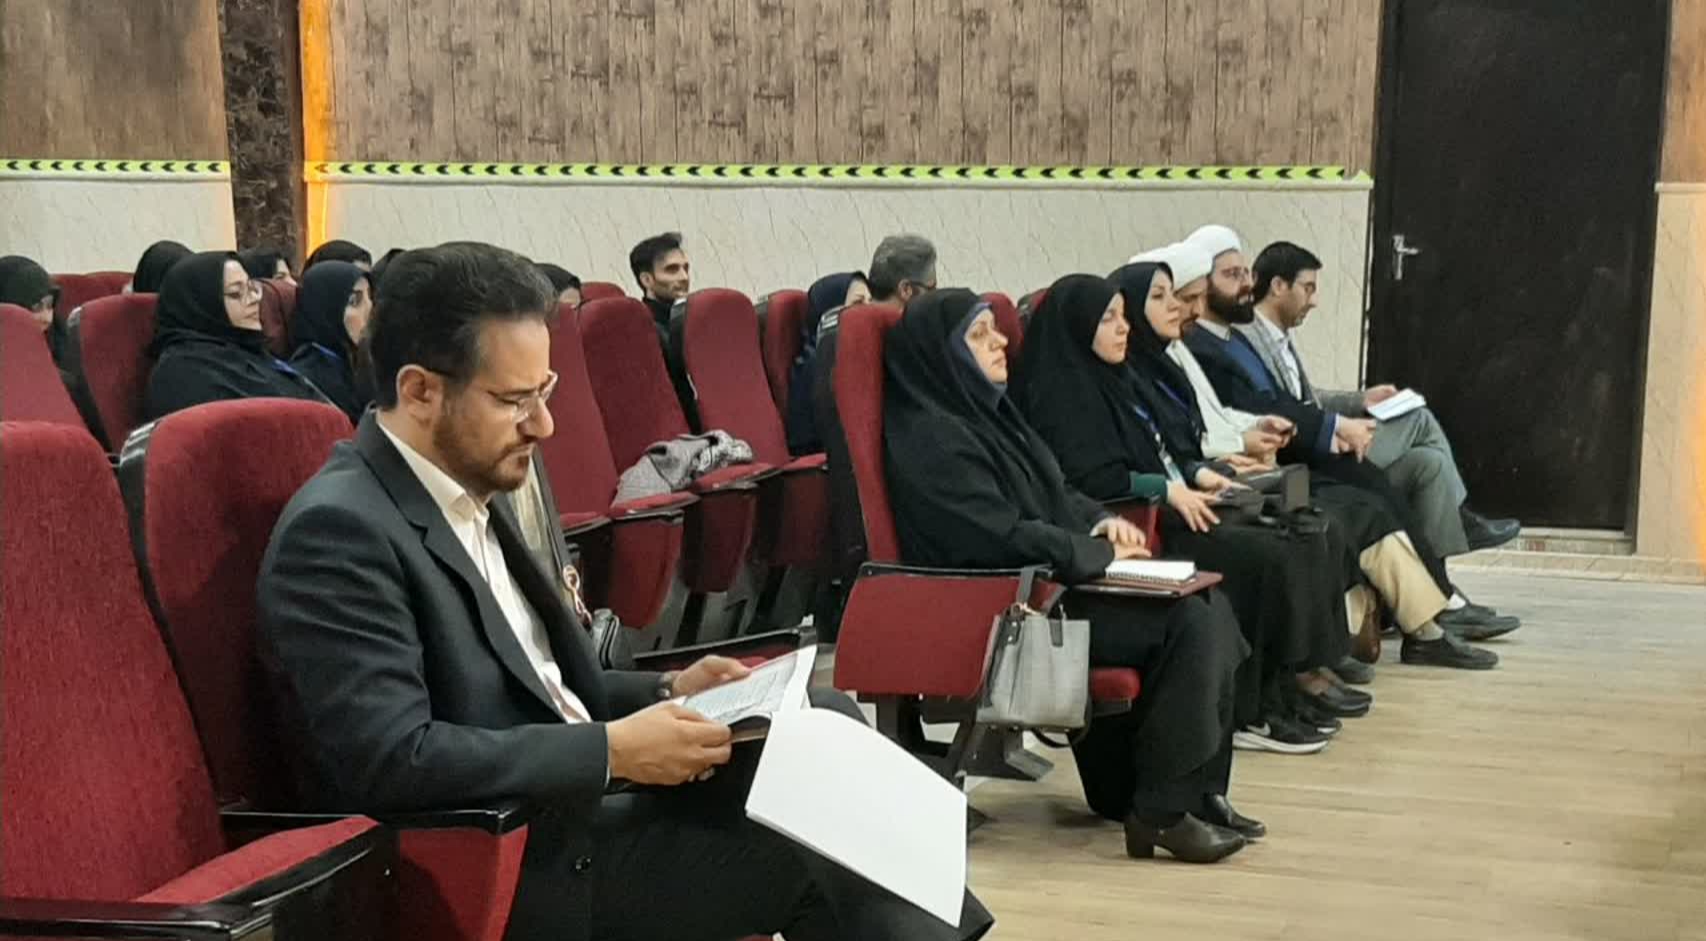 برگزاری دومین پنل تخصصی با موضوع قصه‌های قرآنی و مذهبی در دانشگاه فرهنگیان کرمانشاه